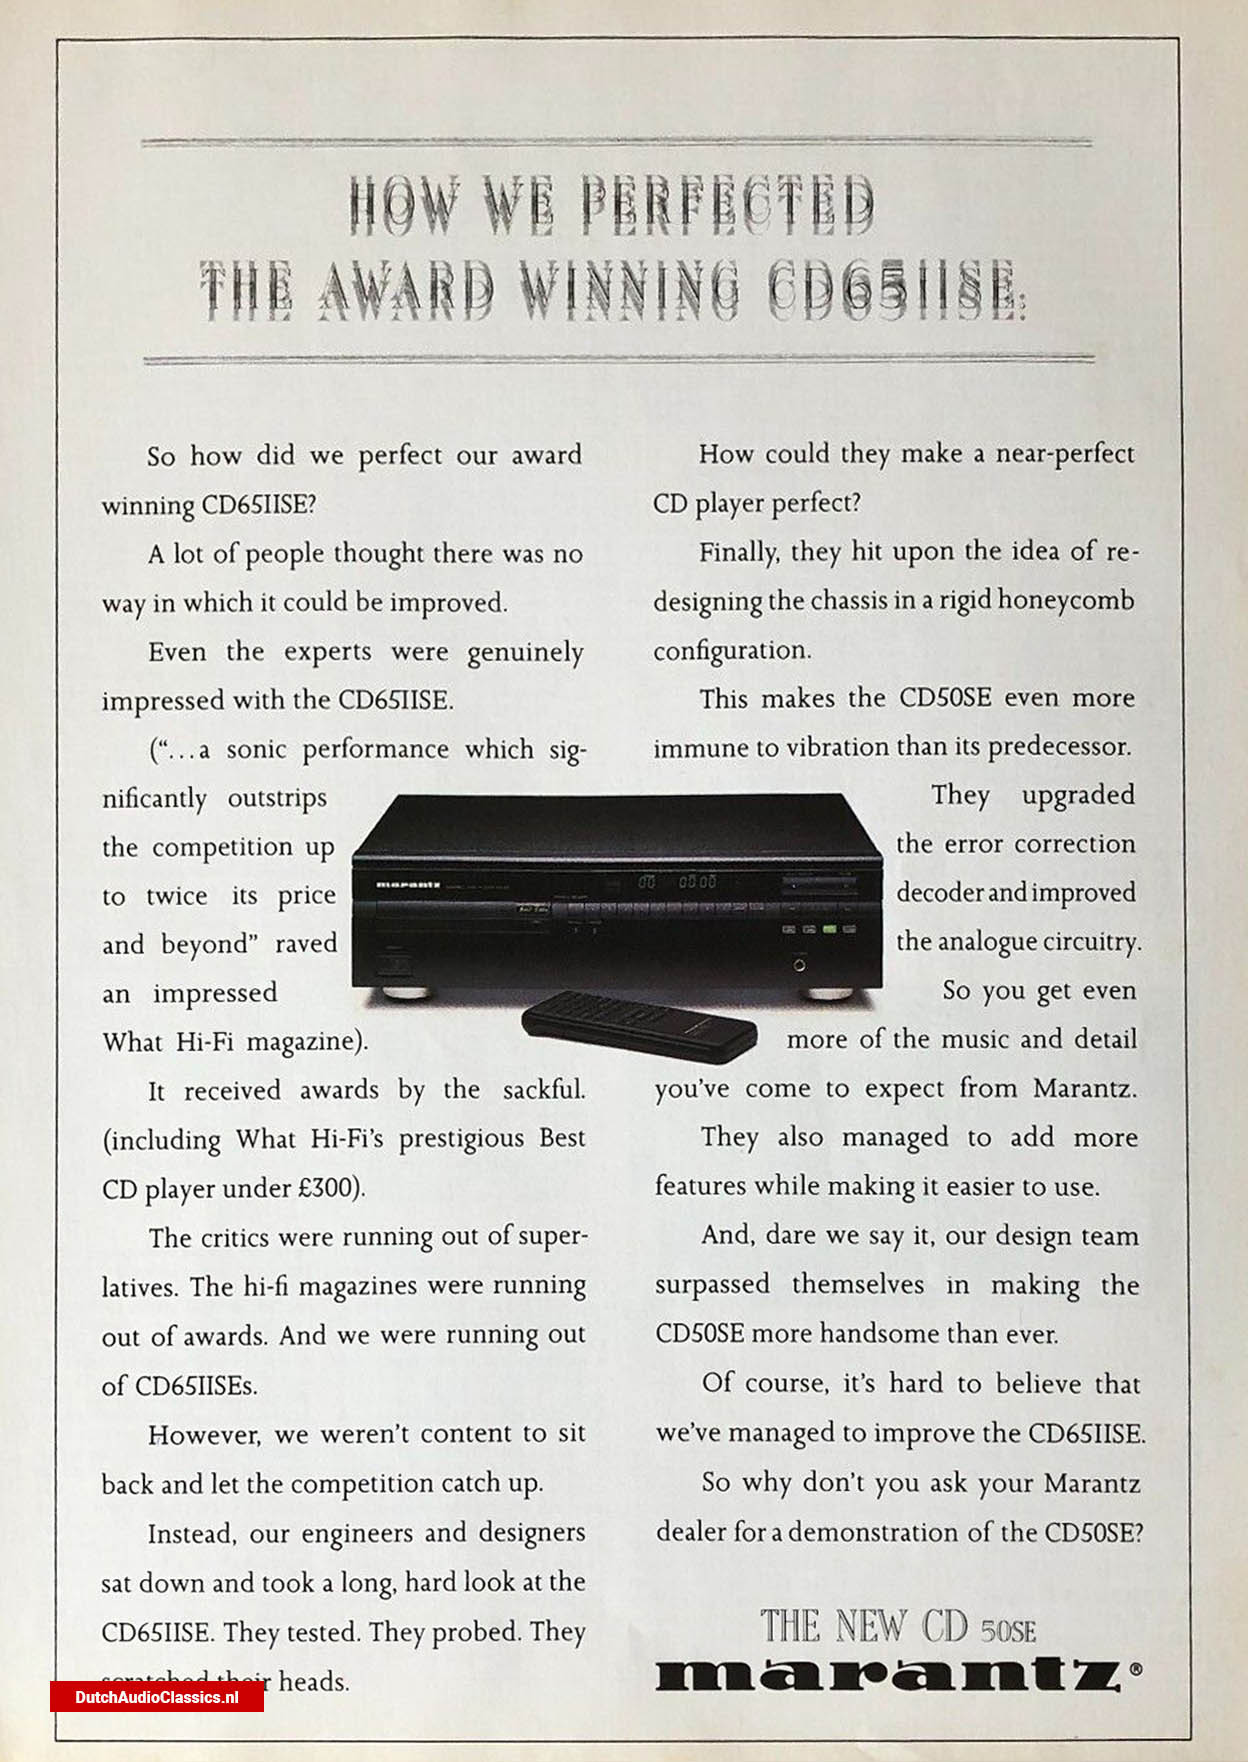 Marantz CD50 SE advertisement November 1989